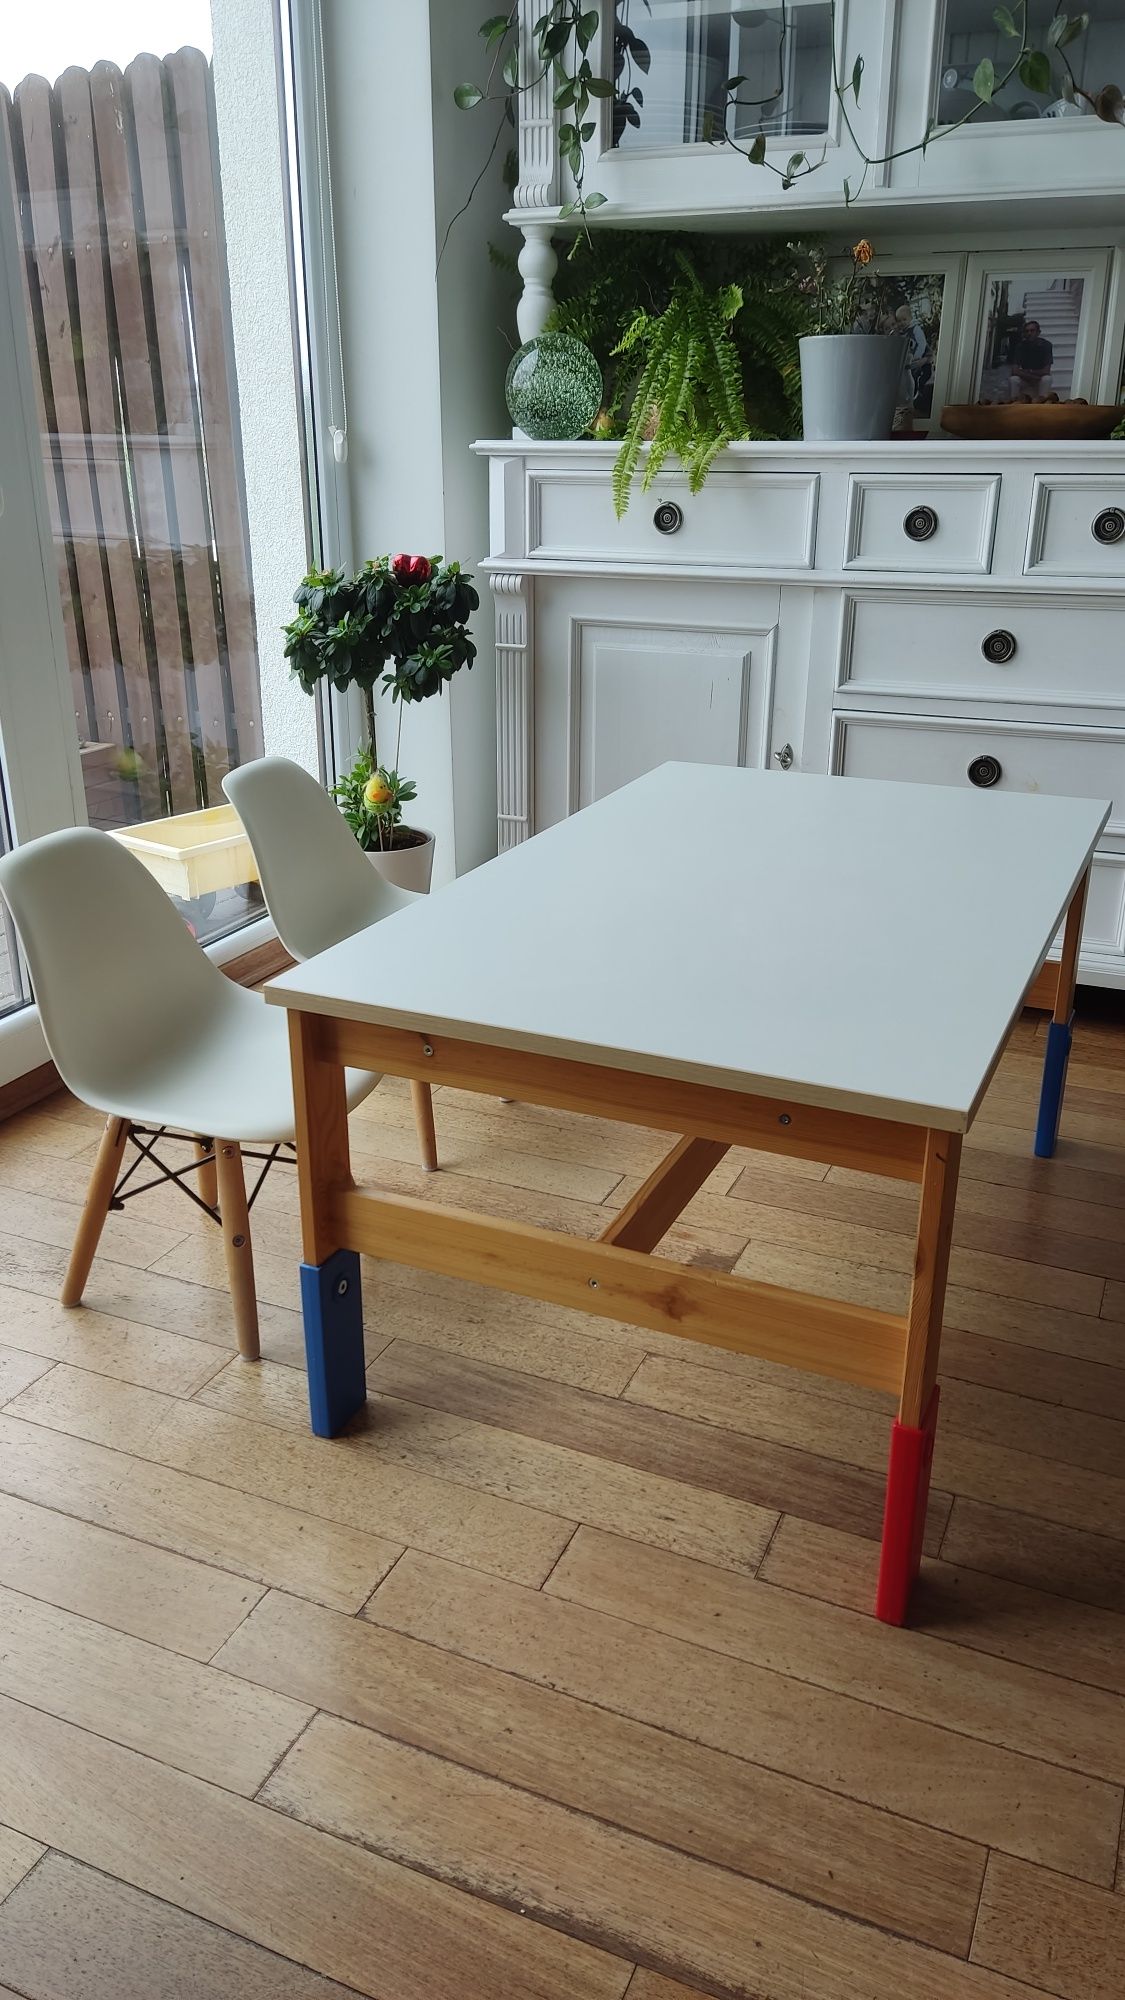 Regulowany stolik dziecięcy Ikea z krzesełkami